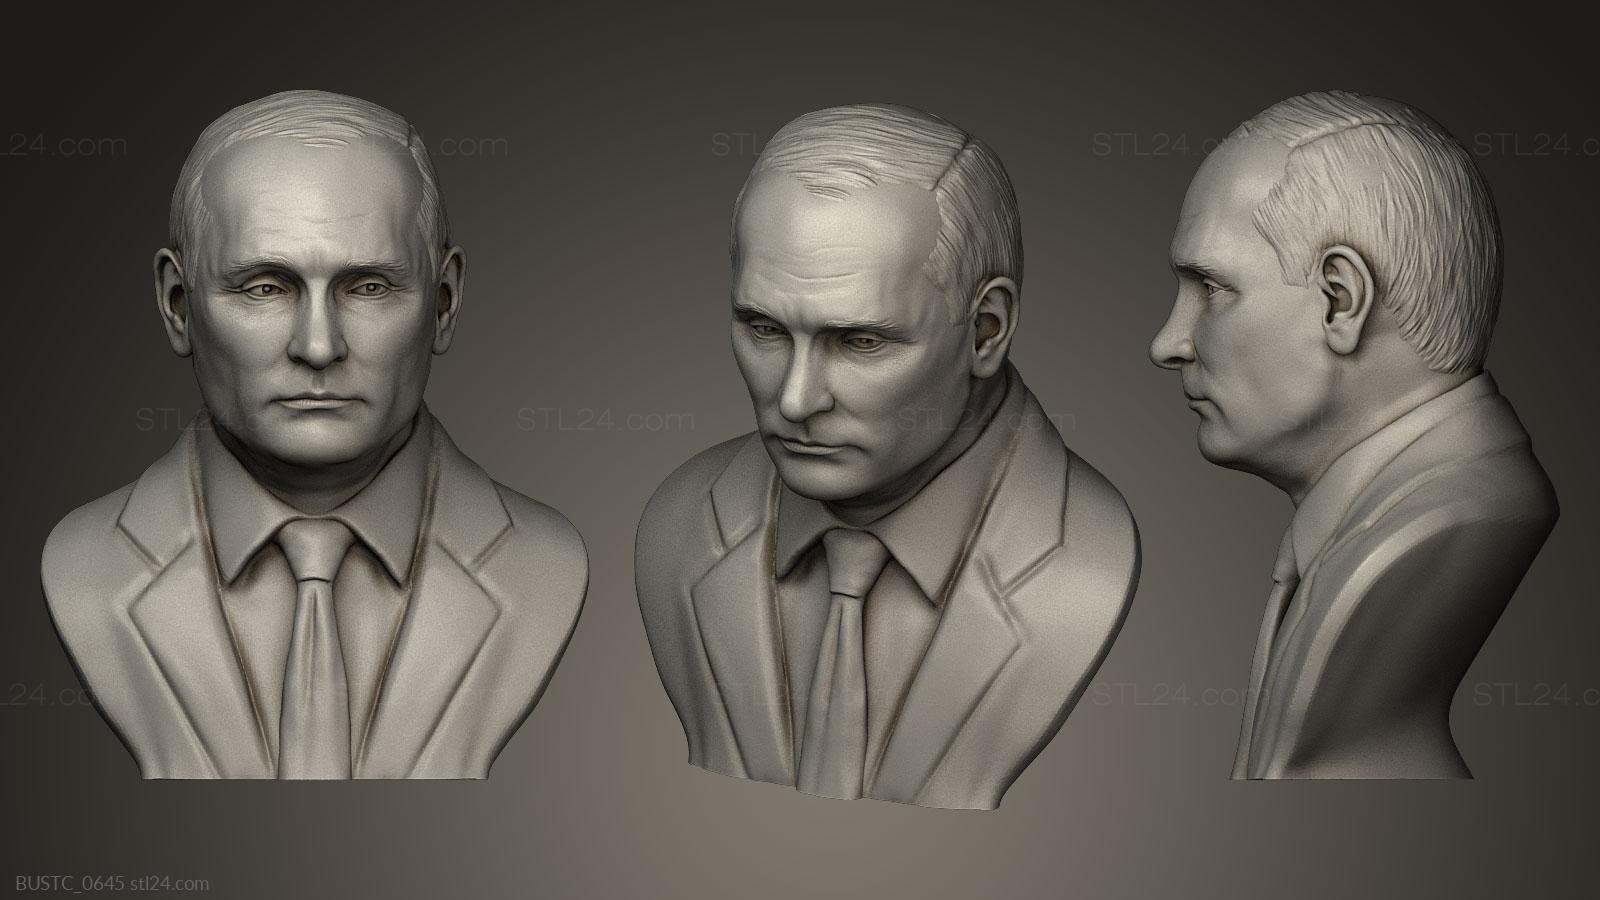 Бюсты и барельефы известных личностей (Владимир Путин, BUSTC_0645) 3D модель для ЧПУ станка